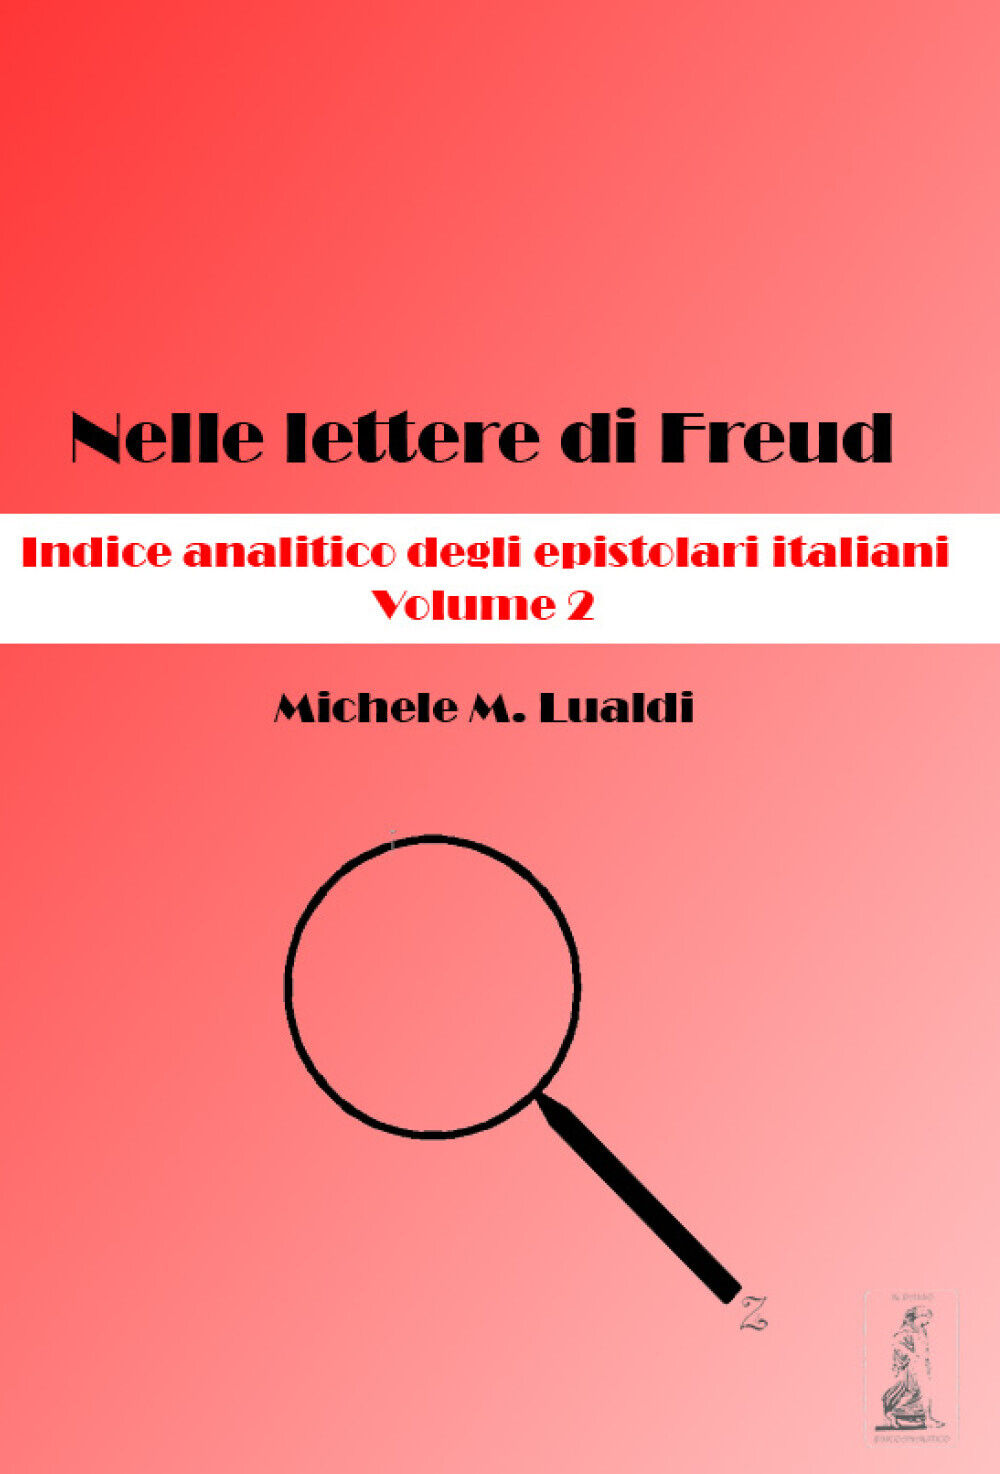 Nelle lettere di Freud. Indice analitico degli epistolari italiani. Volume 2  di